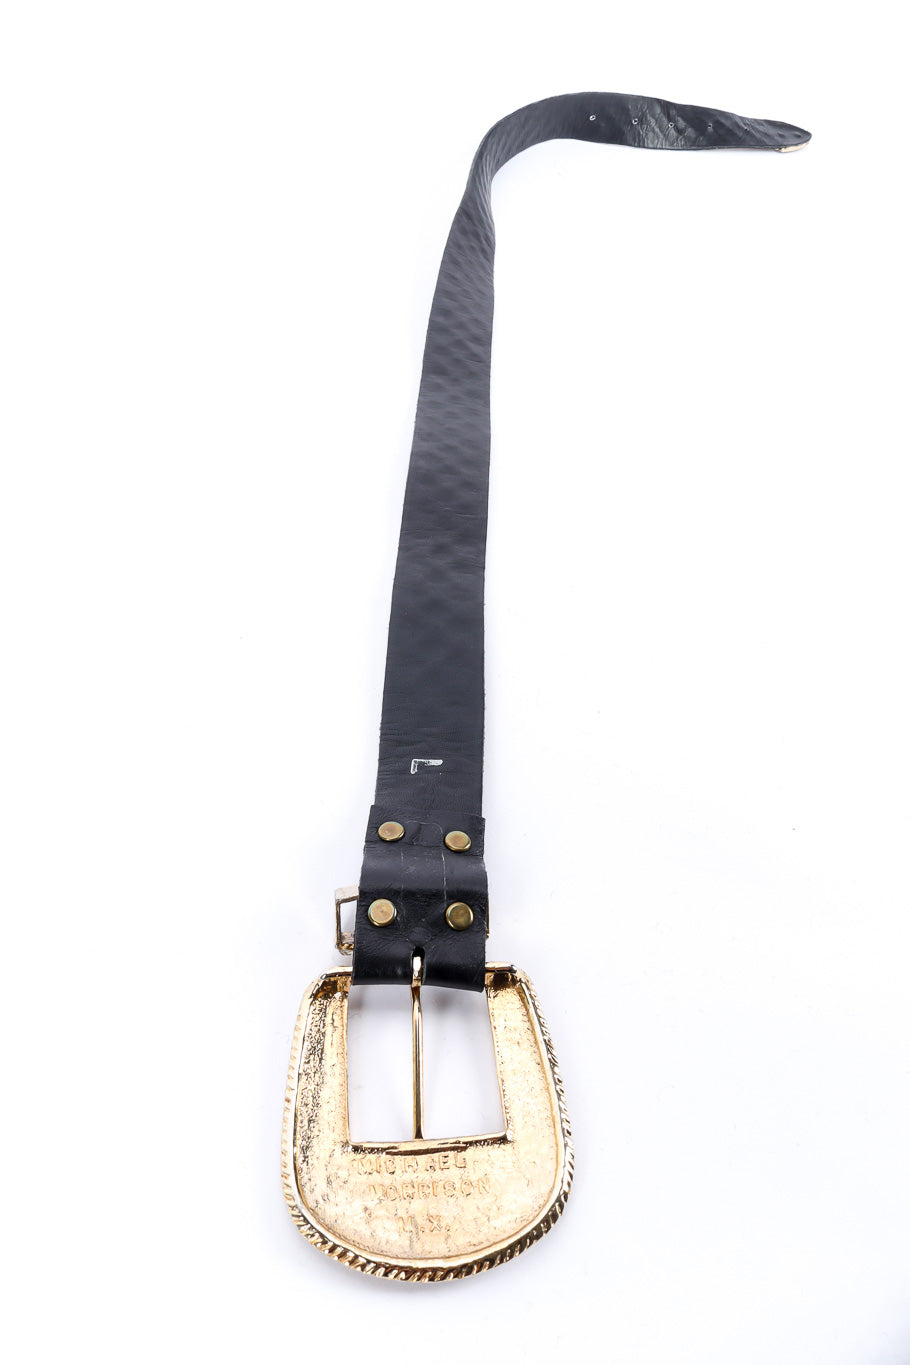 Michael Morrison crystal studded leather belt backside detail @recessla